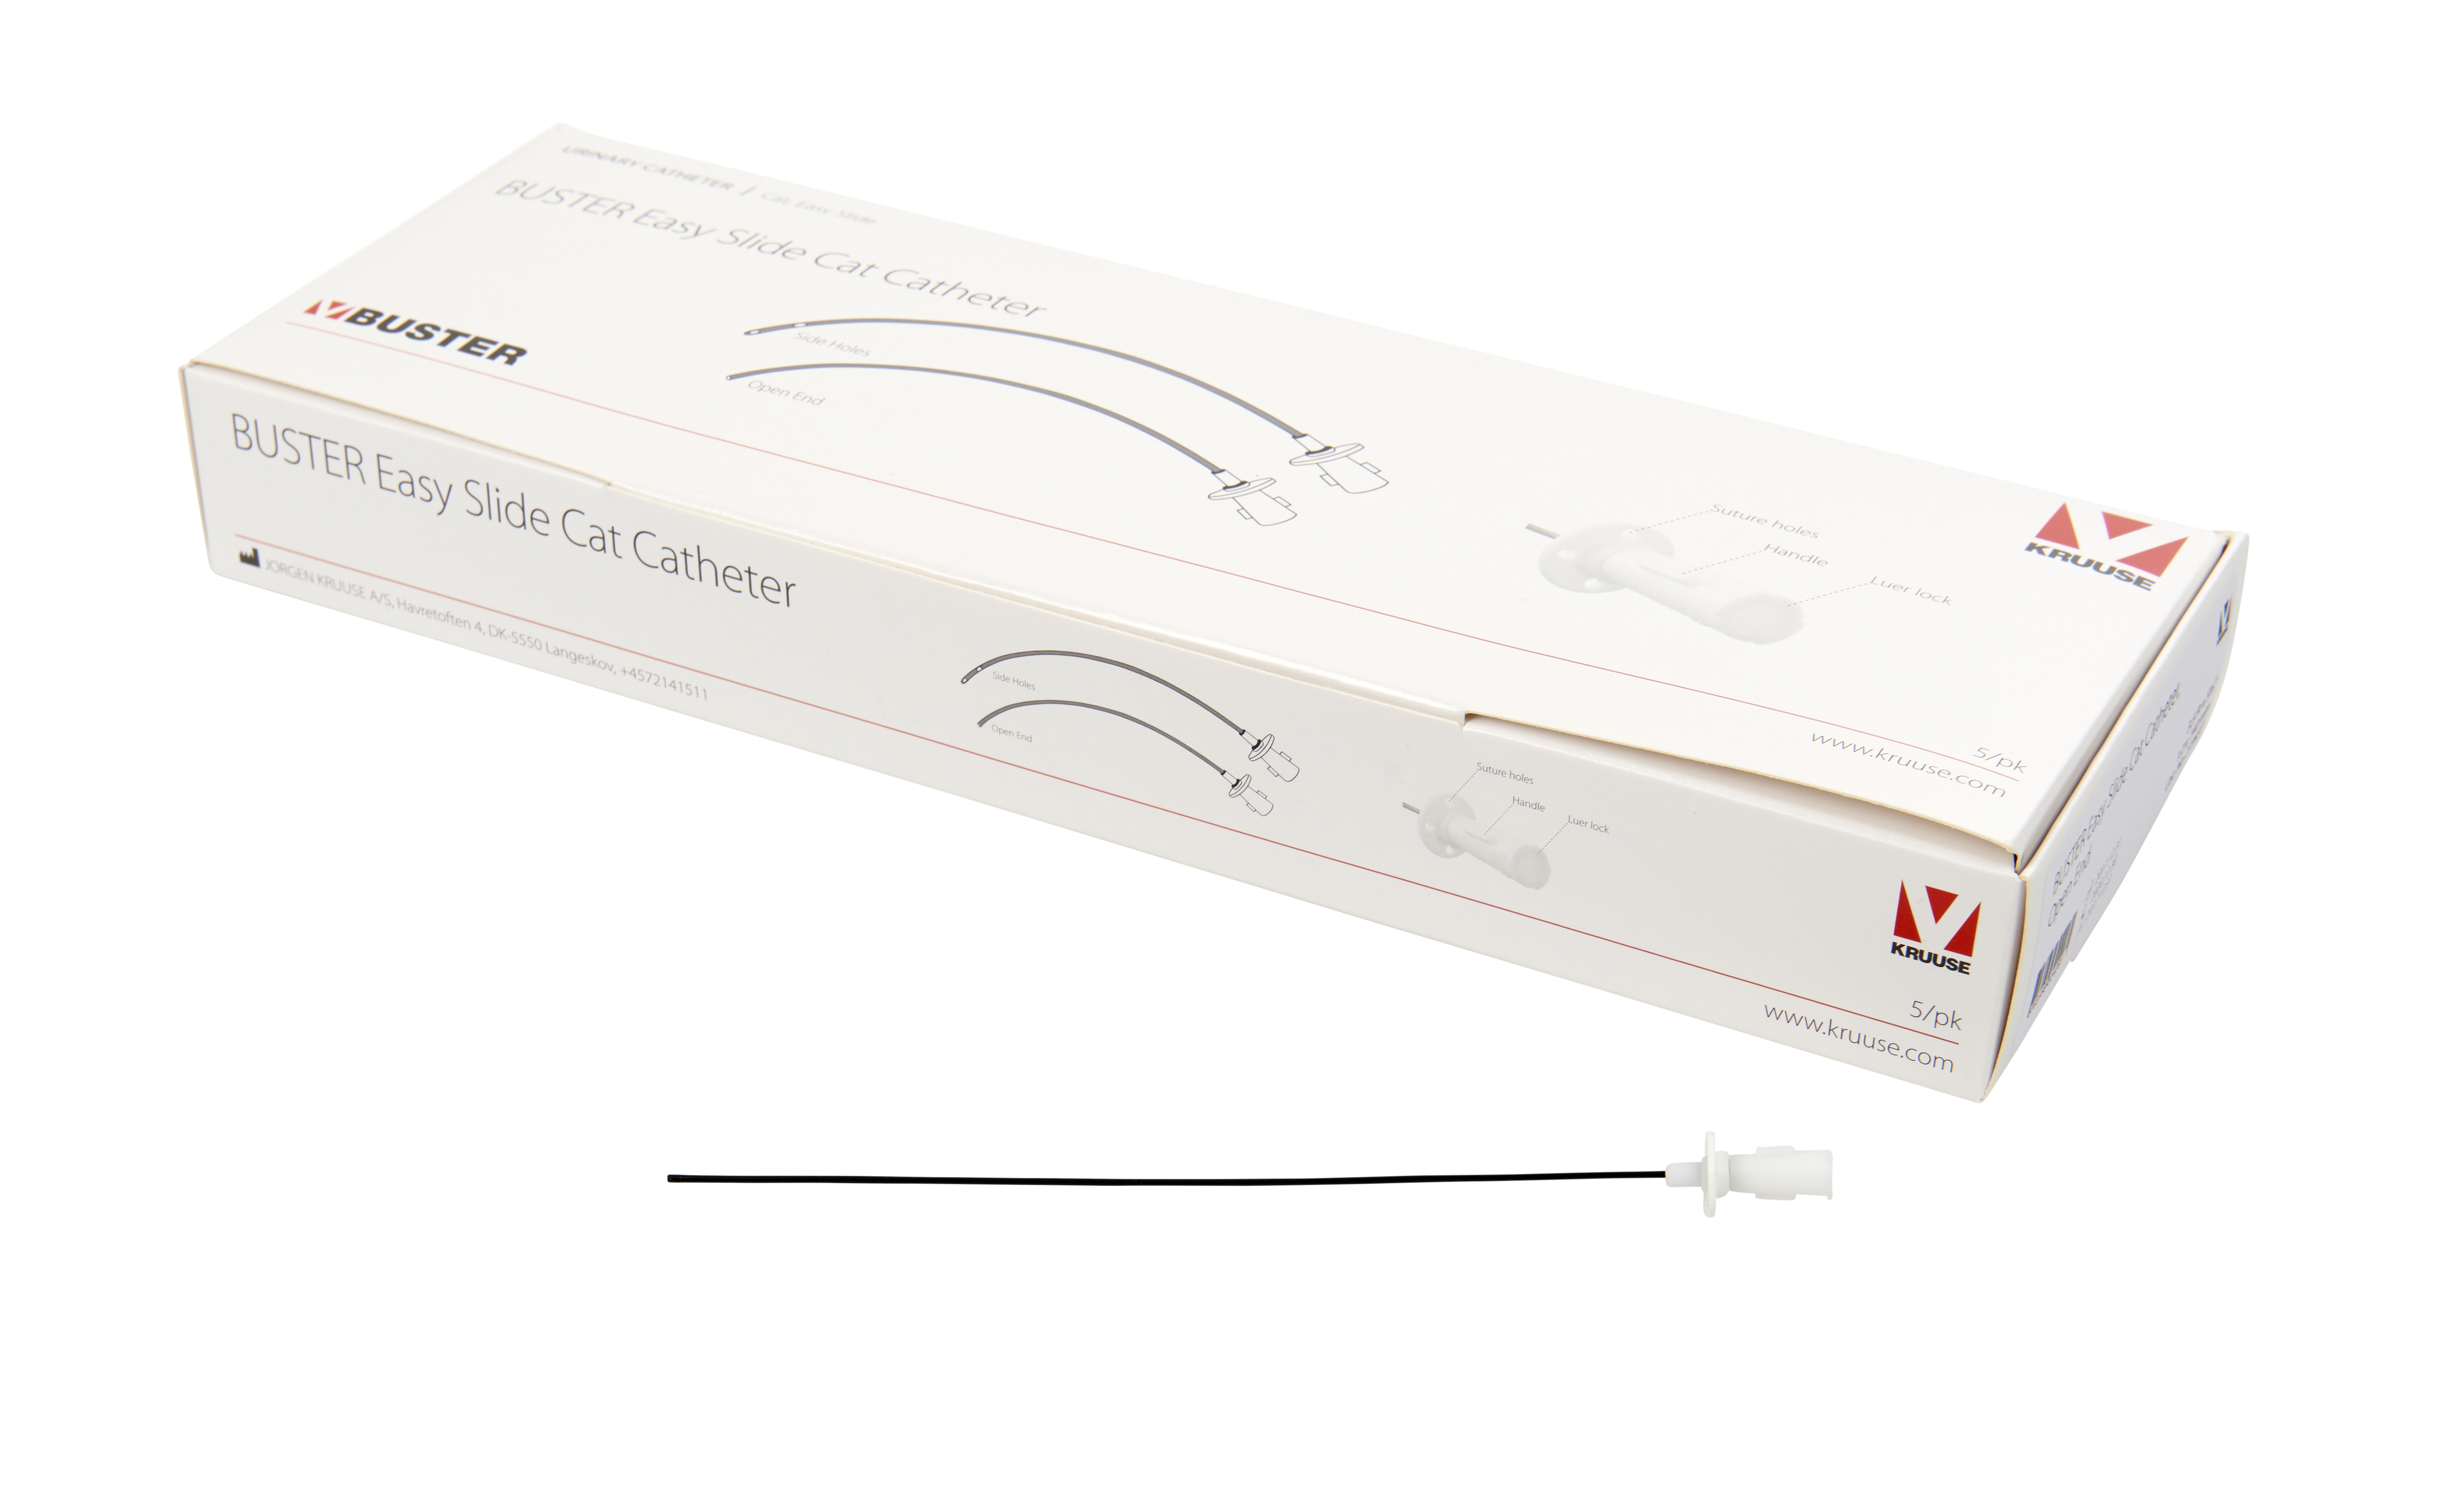 BUSTER Easy Slide Cat Catheter, 3.5 Fr x 4”, 1.2 x 110 mm, open end, 5/pk